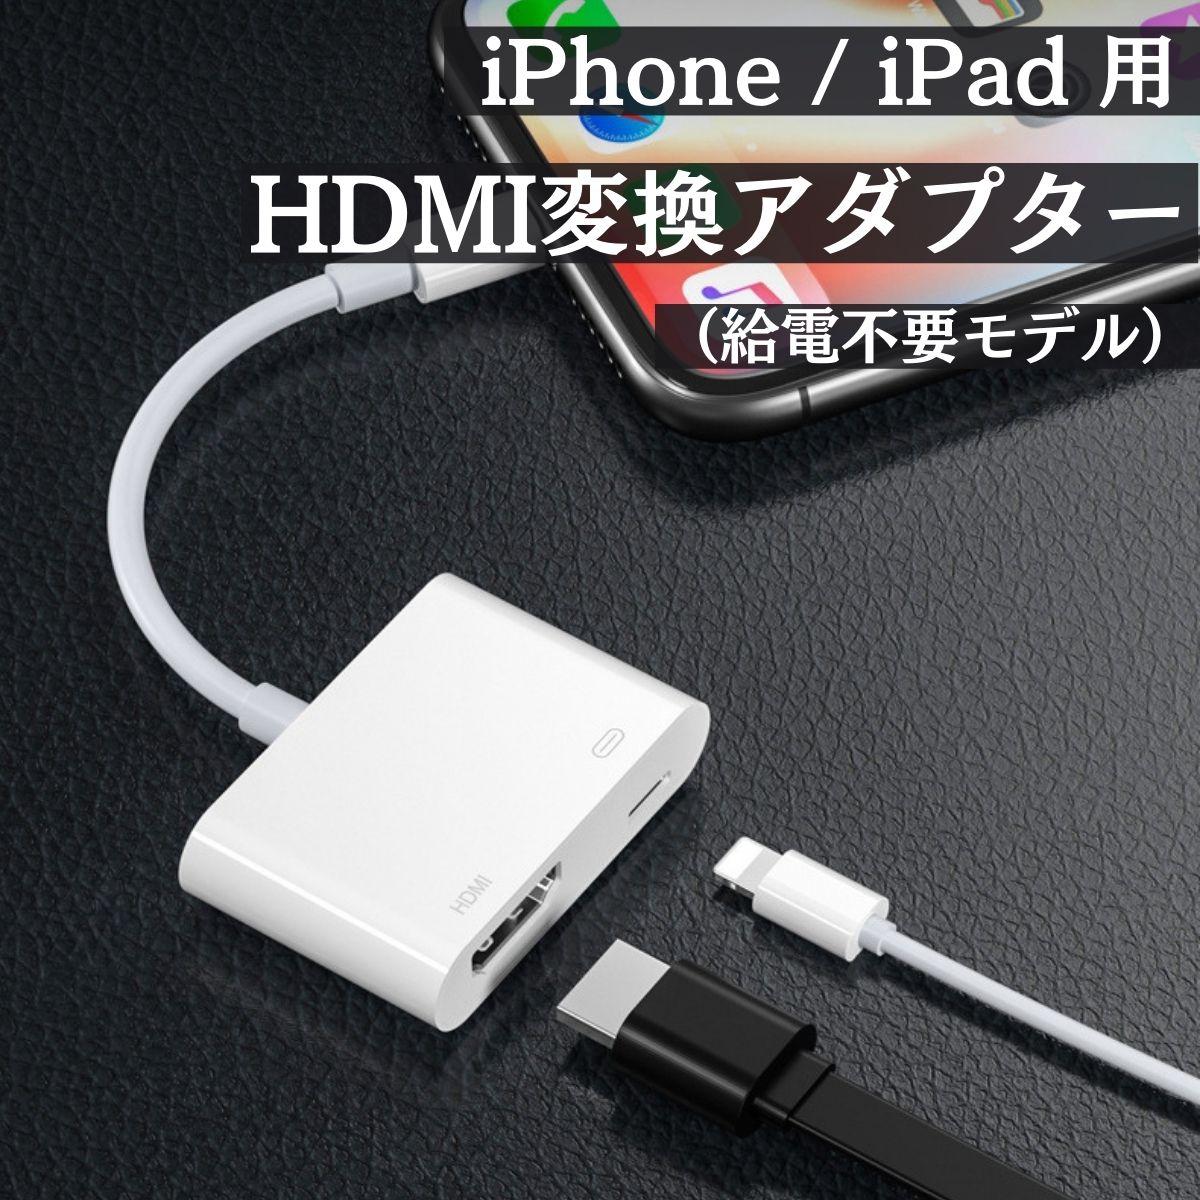 iPhone hdmi 変換 アダプタ iPad ライトニング テレビ 大画面 デジタル